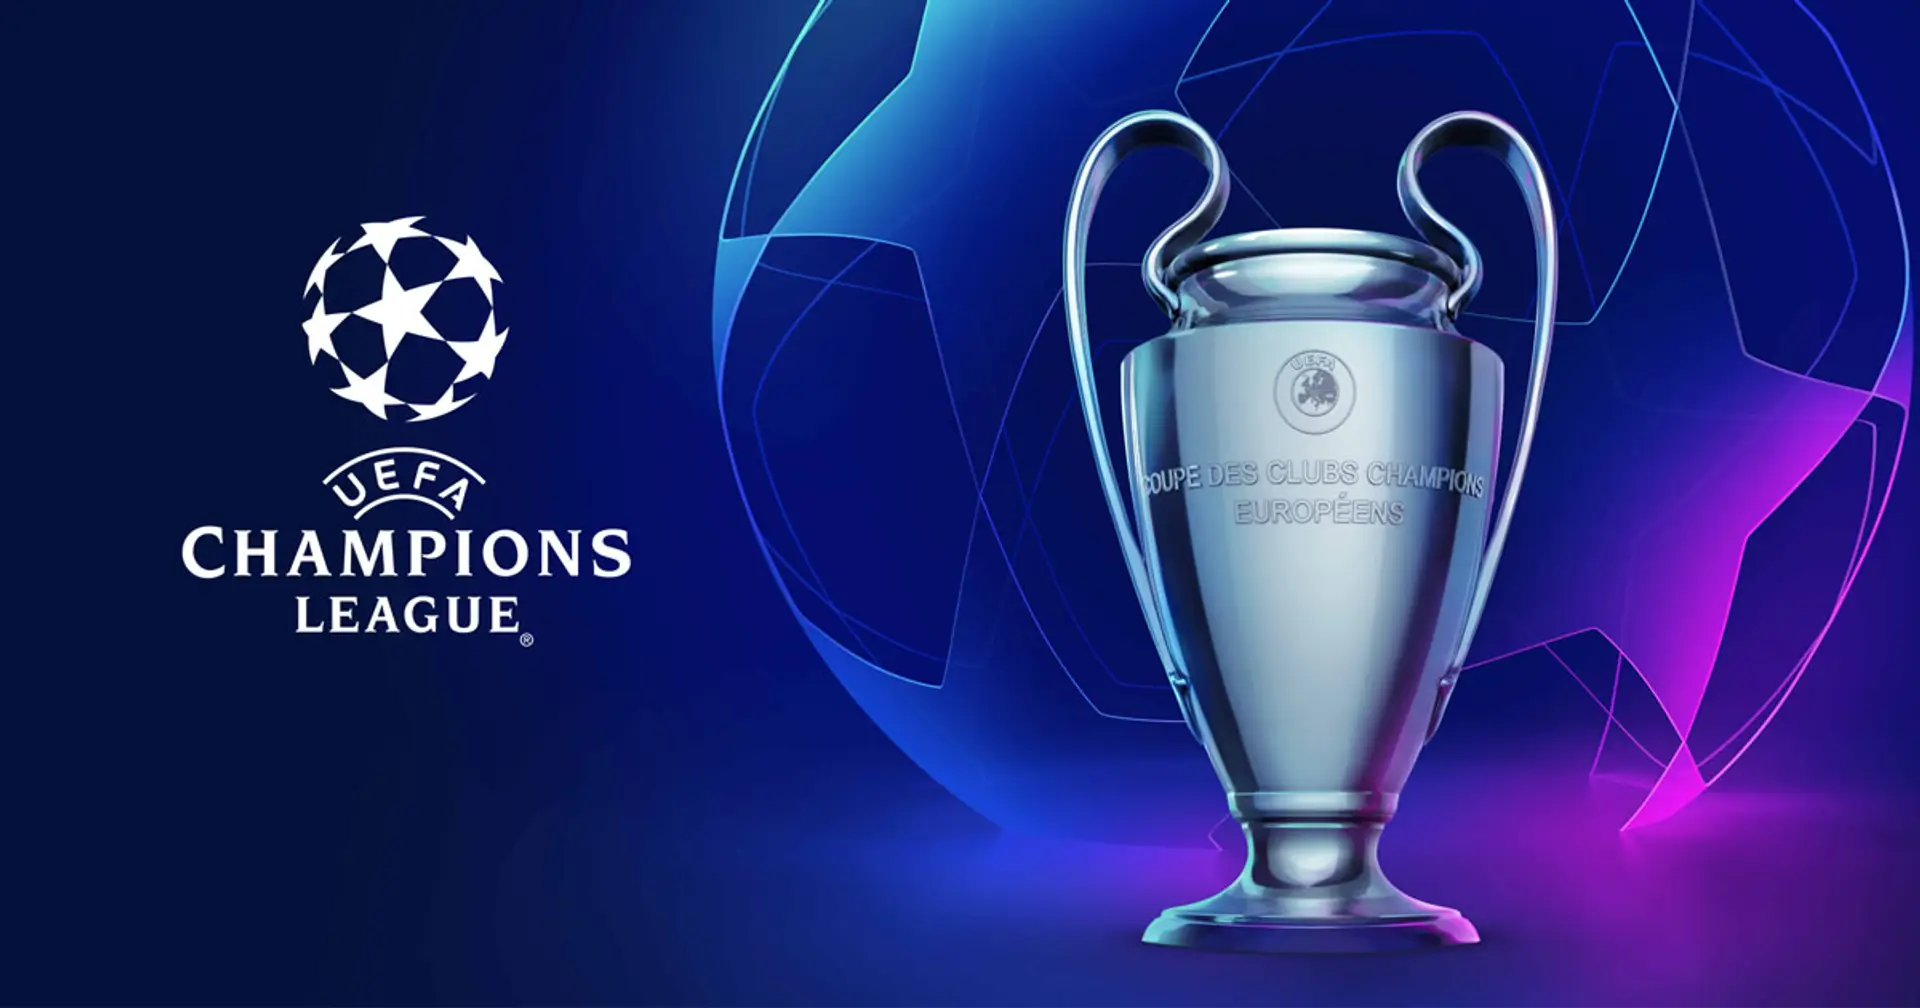 Definite le fasce per la prossima Champions League 22/23: la Juve ringrazia i risultati ottenuti in passato